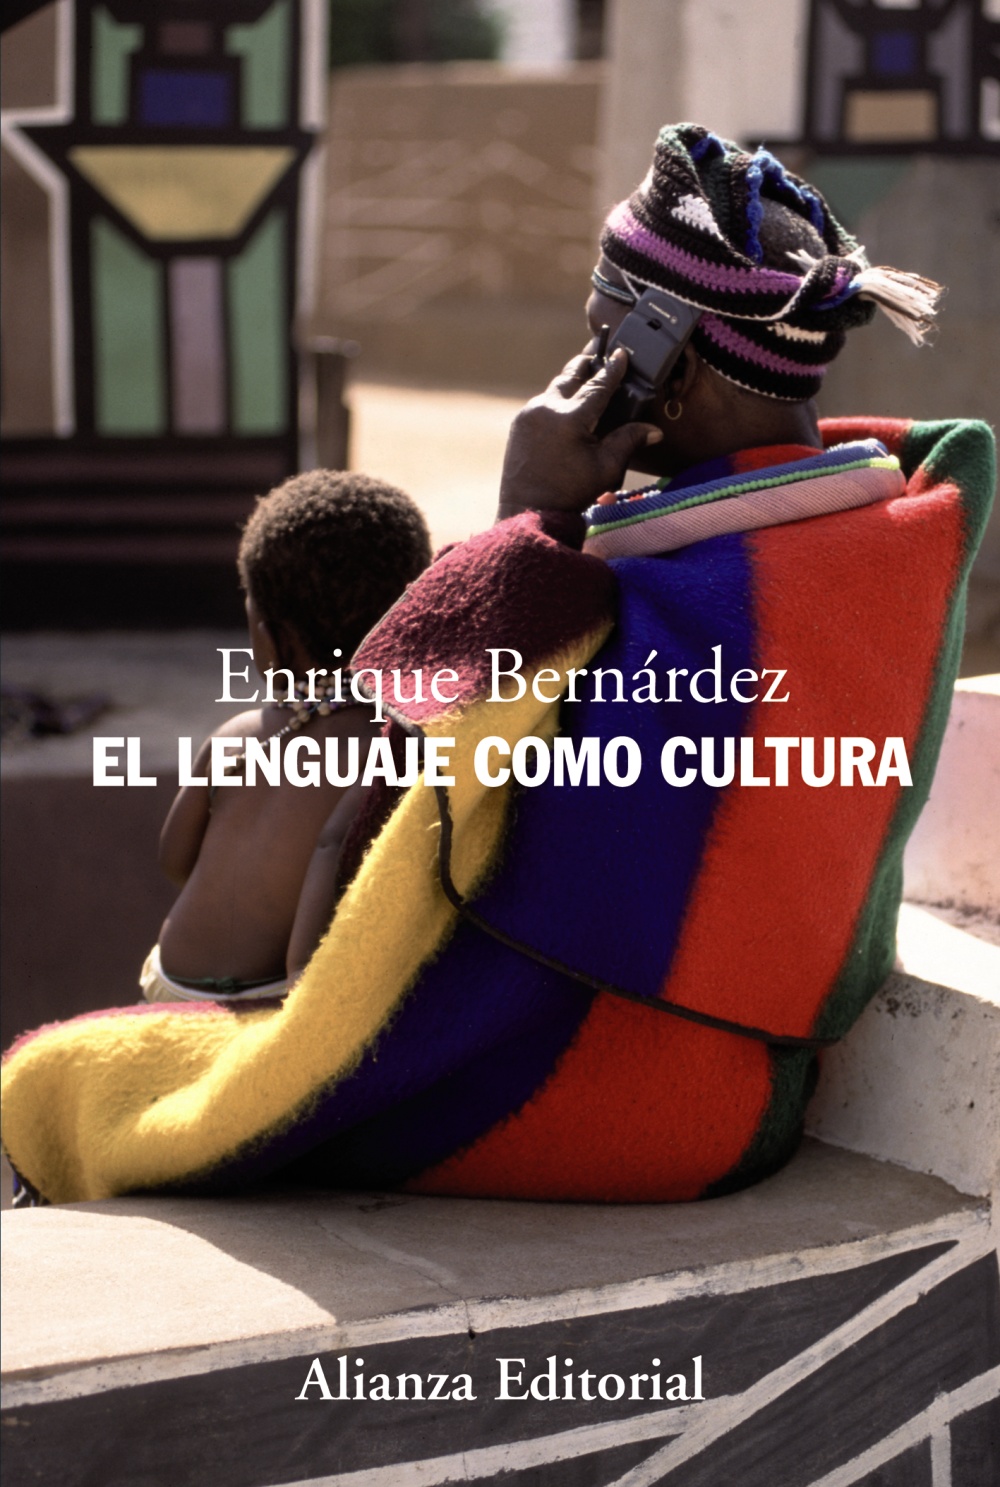 Minero Musgo engranaje El lenguaje como cultura - Alianza Editorial